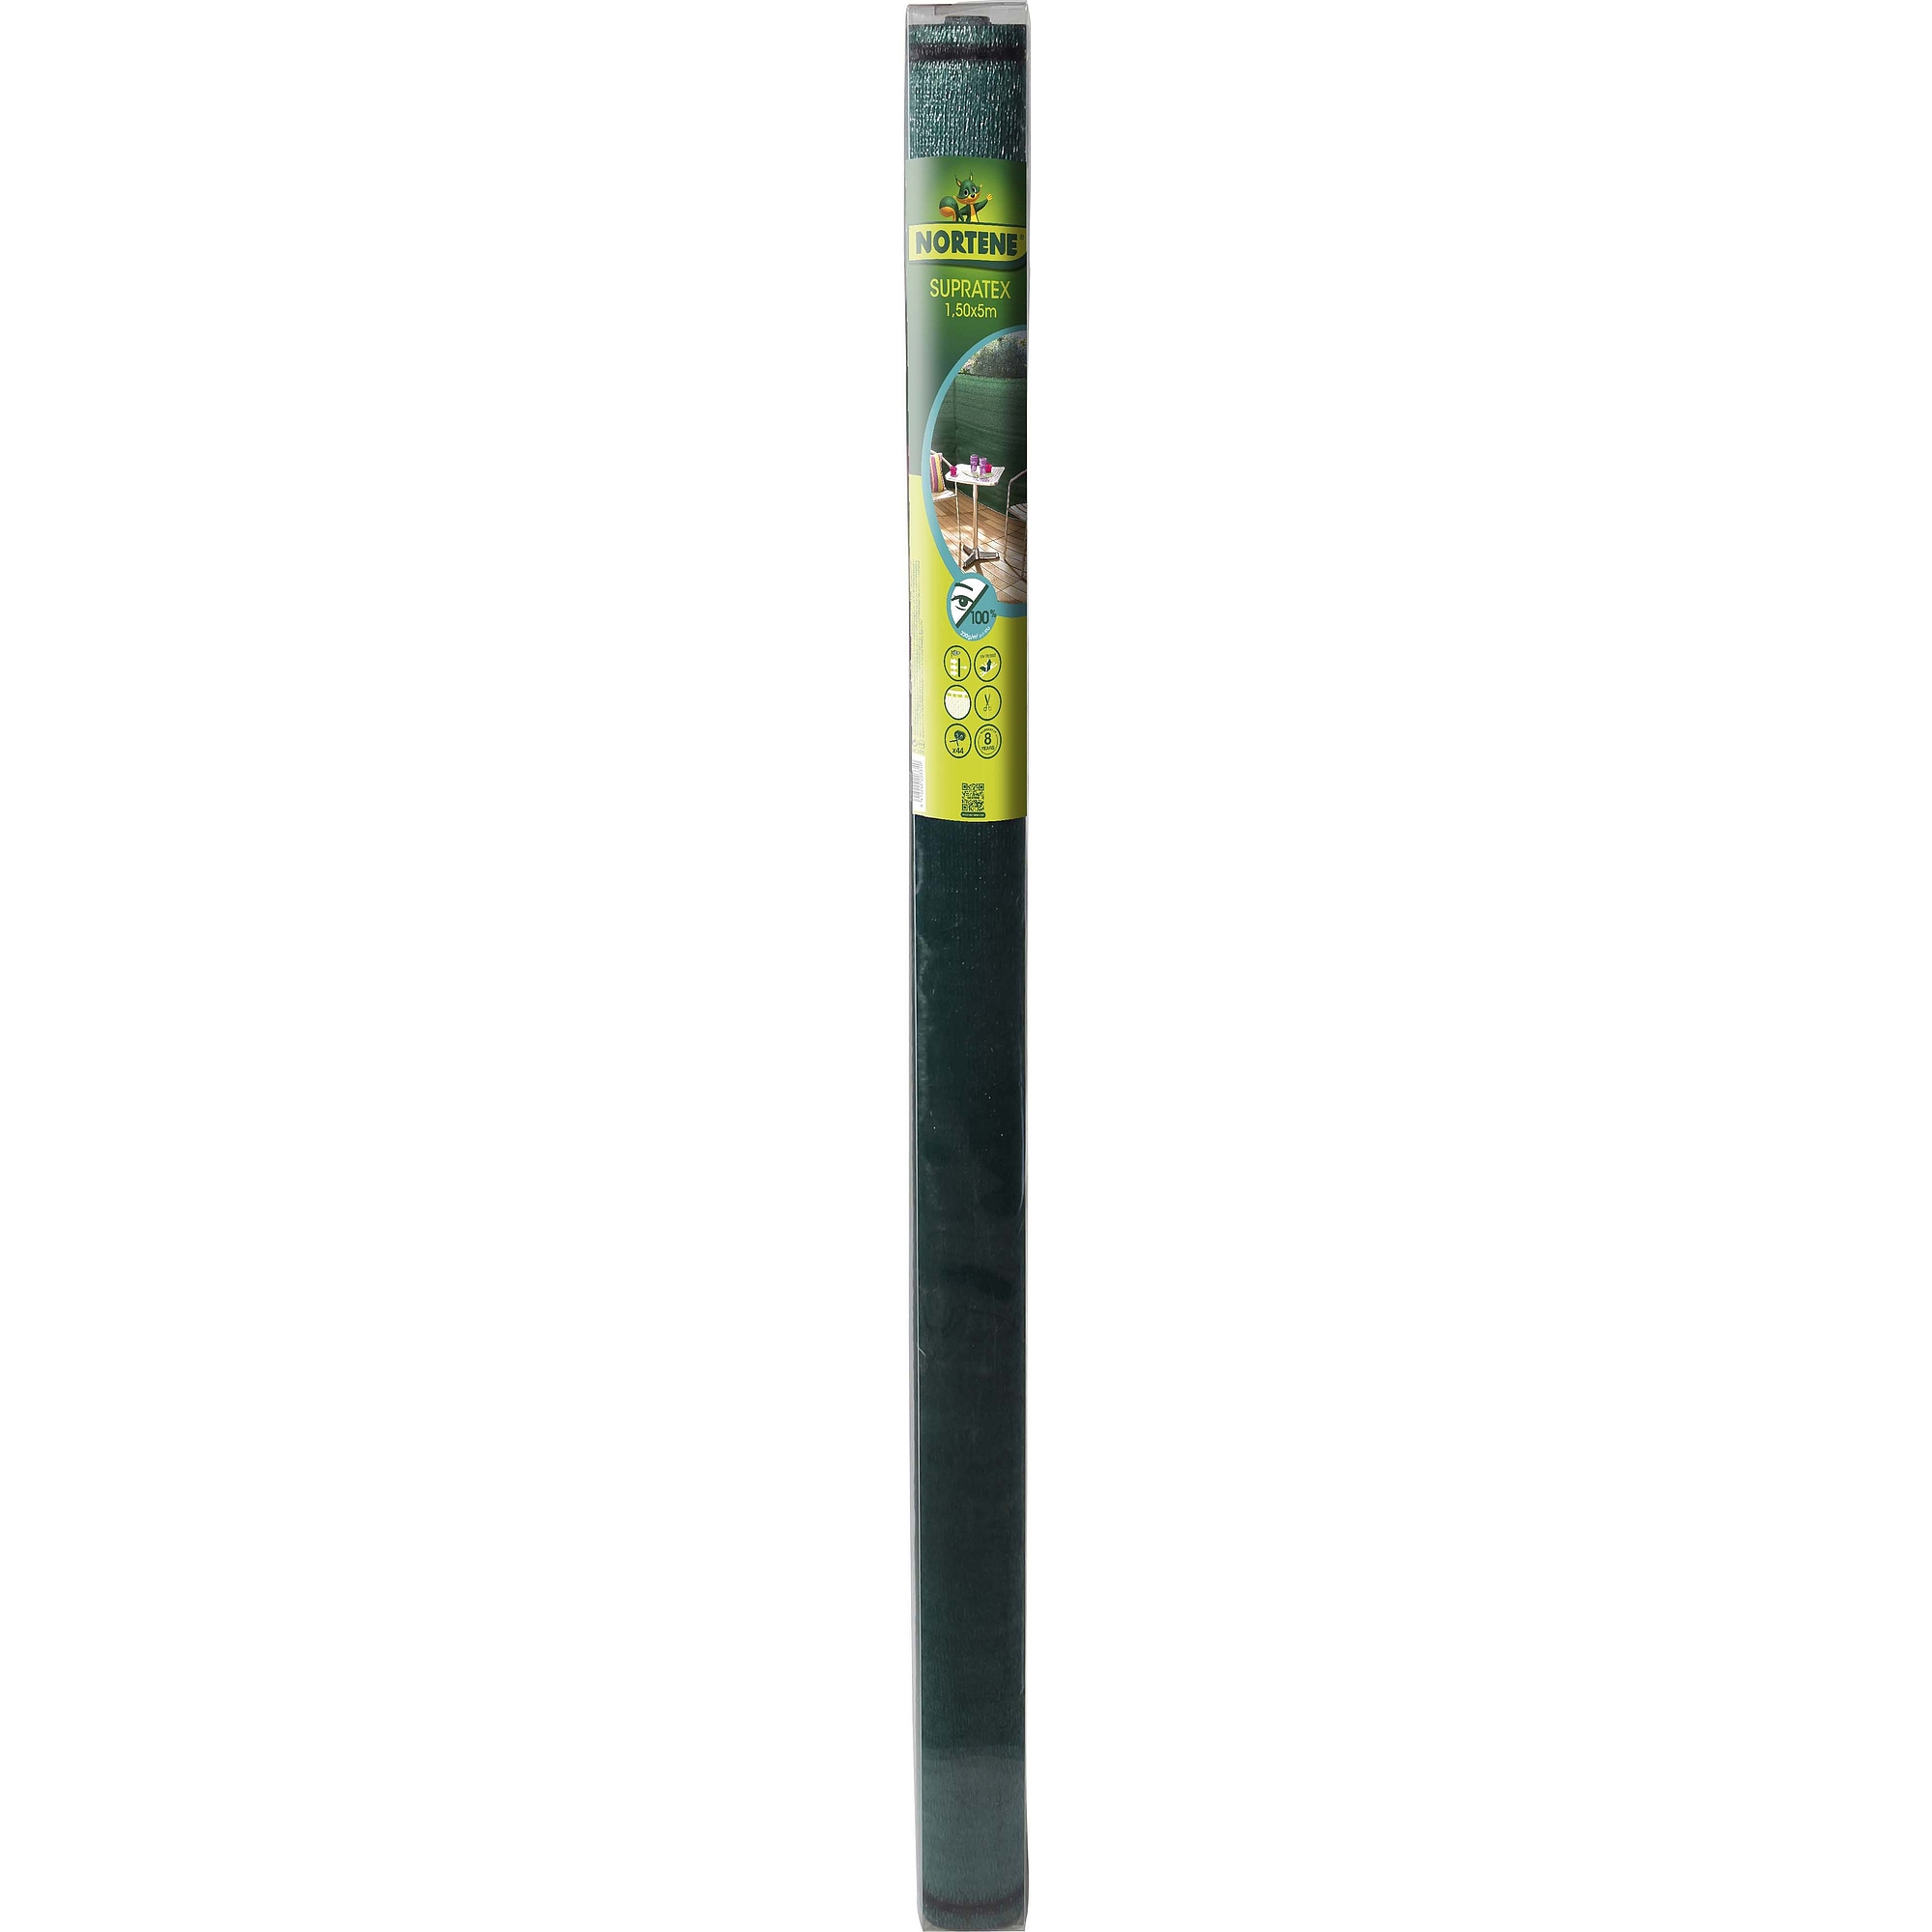 Nortene SUPRATEX gomblyukazott, szőtt árnyékoló háló, 100% - 1,5 x 5 m -  zöld - 2011873